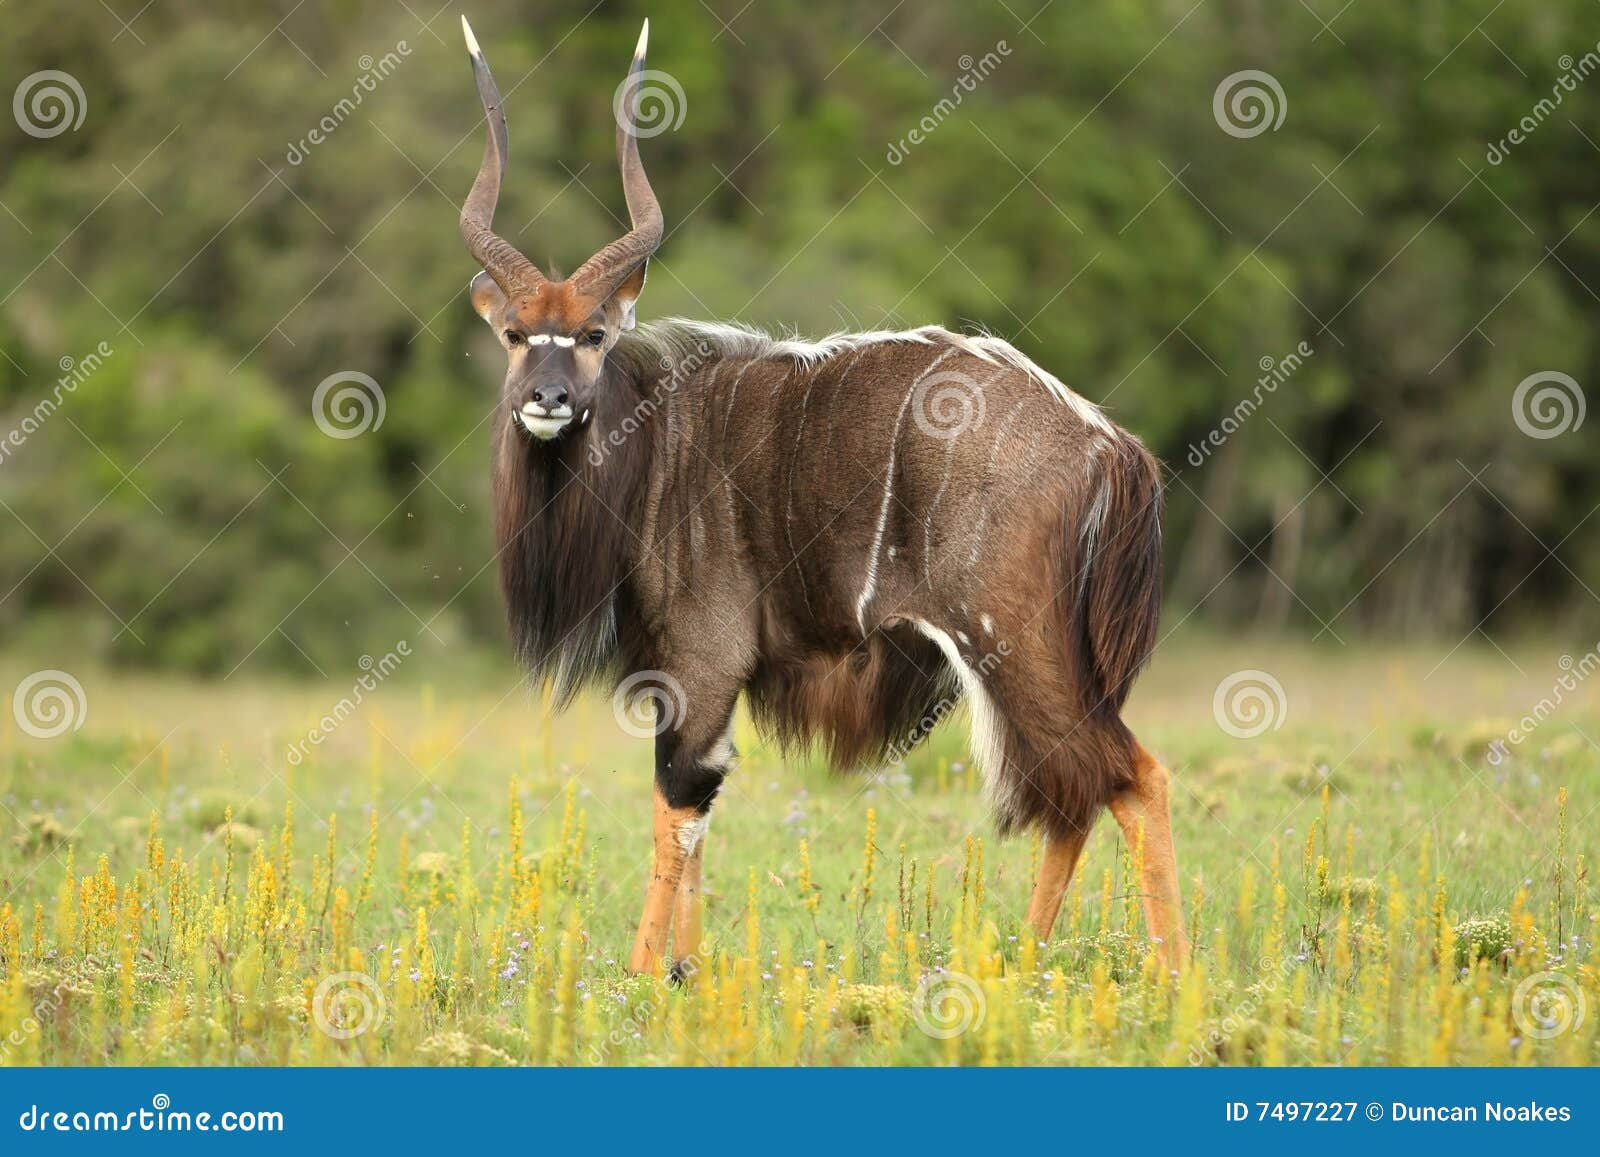 nyala antelope ram